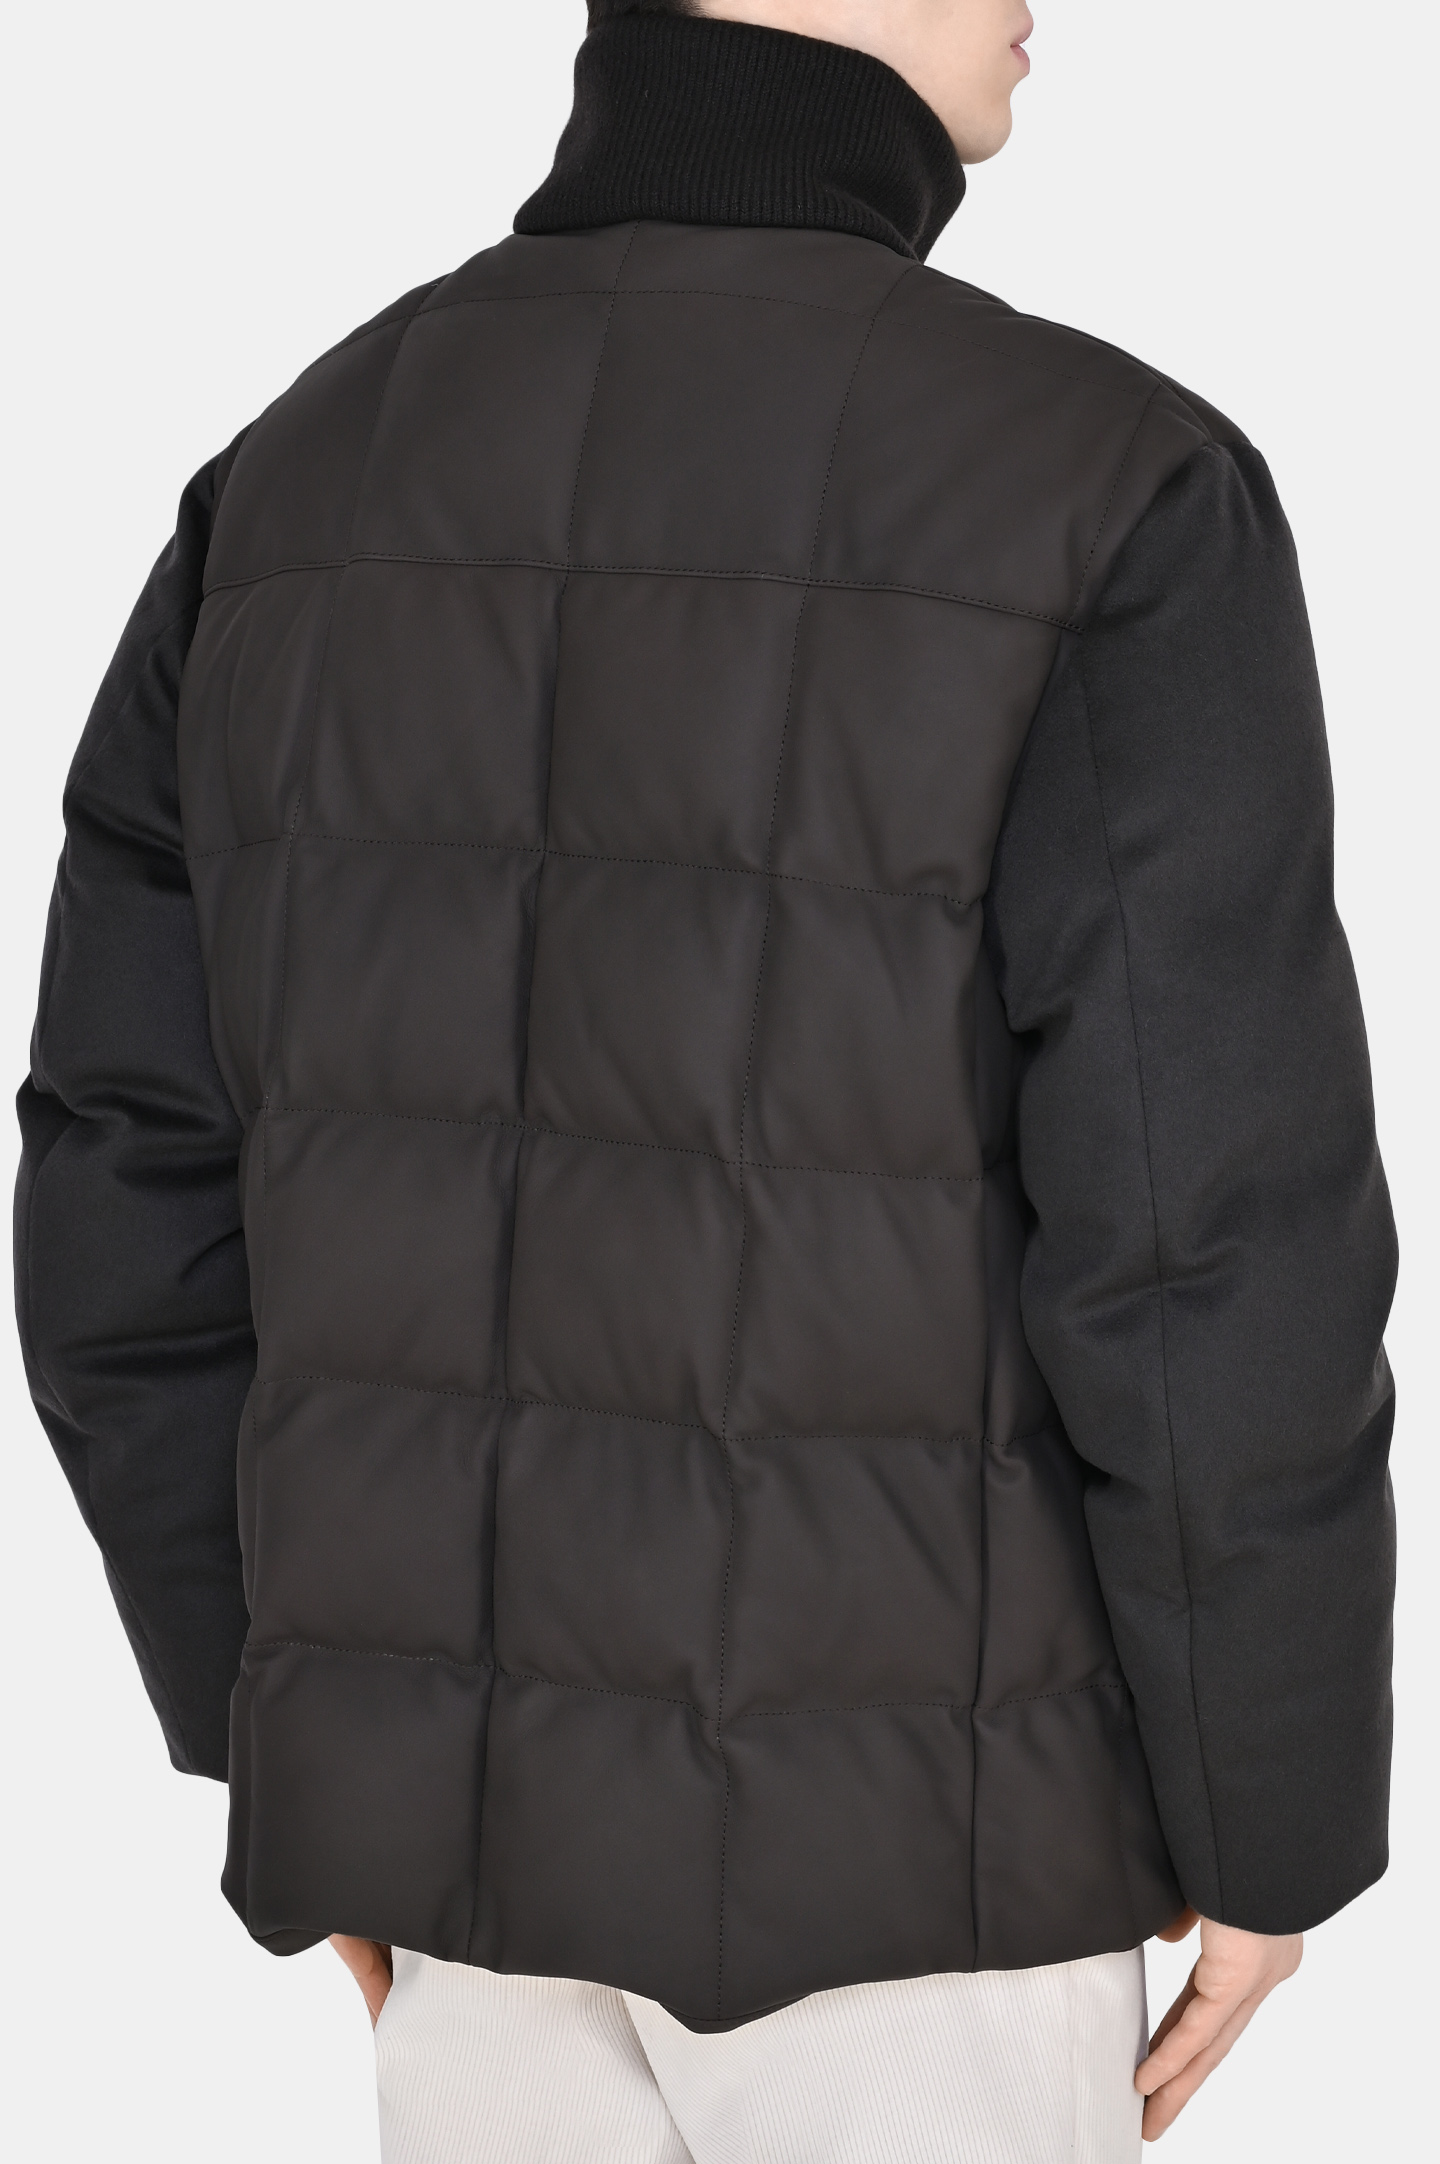 Куртка LORO PIANA FAM5099, цвет: Коричневый, Мужской